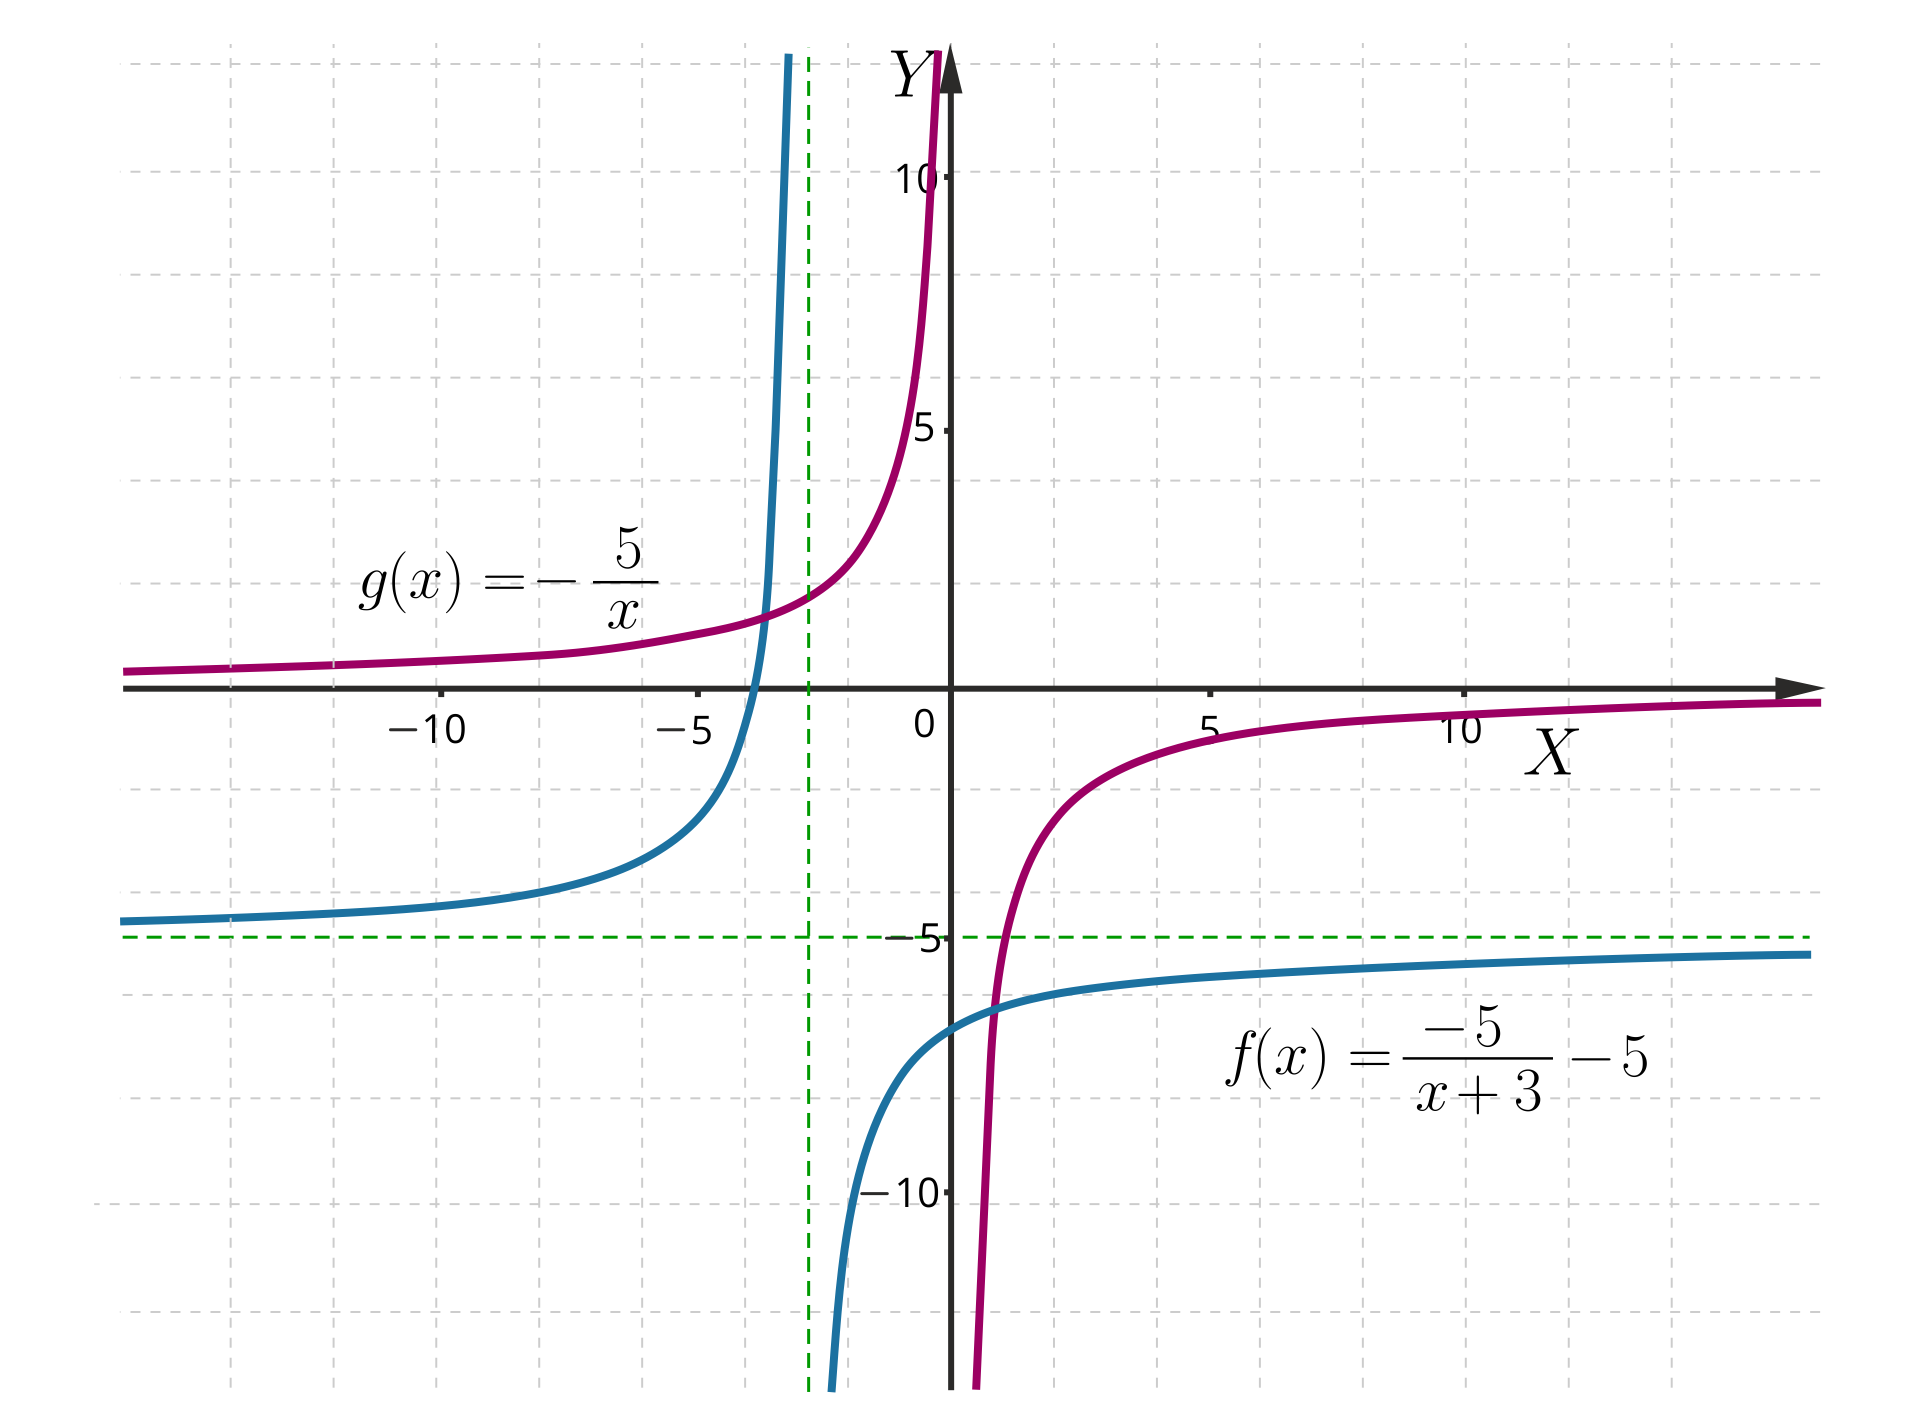 Na ilustracji znajduje się układ współrzędnych z zaznaczonymi dwoma wykresami funkcji. Pierwszy wykres to wykres funkcji g od x równa się początek ułamka minus pięć, mianownik x koniec ułamka. Jest to hiperbola, znajdująca się w drugiej i czwartej ćwiartce układu, która posiada asymptotę pionową o równaniu x=0 oraz asymptotę poziomą o równaniu y=0. Drugi wykres, to wykres funkcji fx=-5x-3-5. Jest to hiperbola o takim samym kształcie, która posiada asymptotę pionową o równaniu x=-3 oraz asymptotę poziomą o równaniu y=-pięć. Wykres funkcji f jest przesunięty względem wykresu funkcji g o trzy jednostki w lewo i o pięć jednostek w dół.